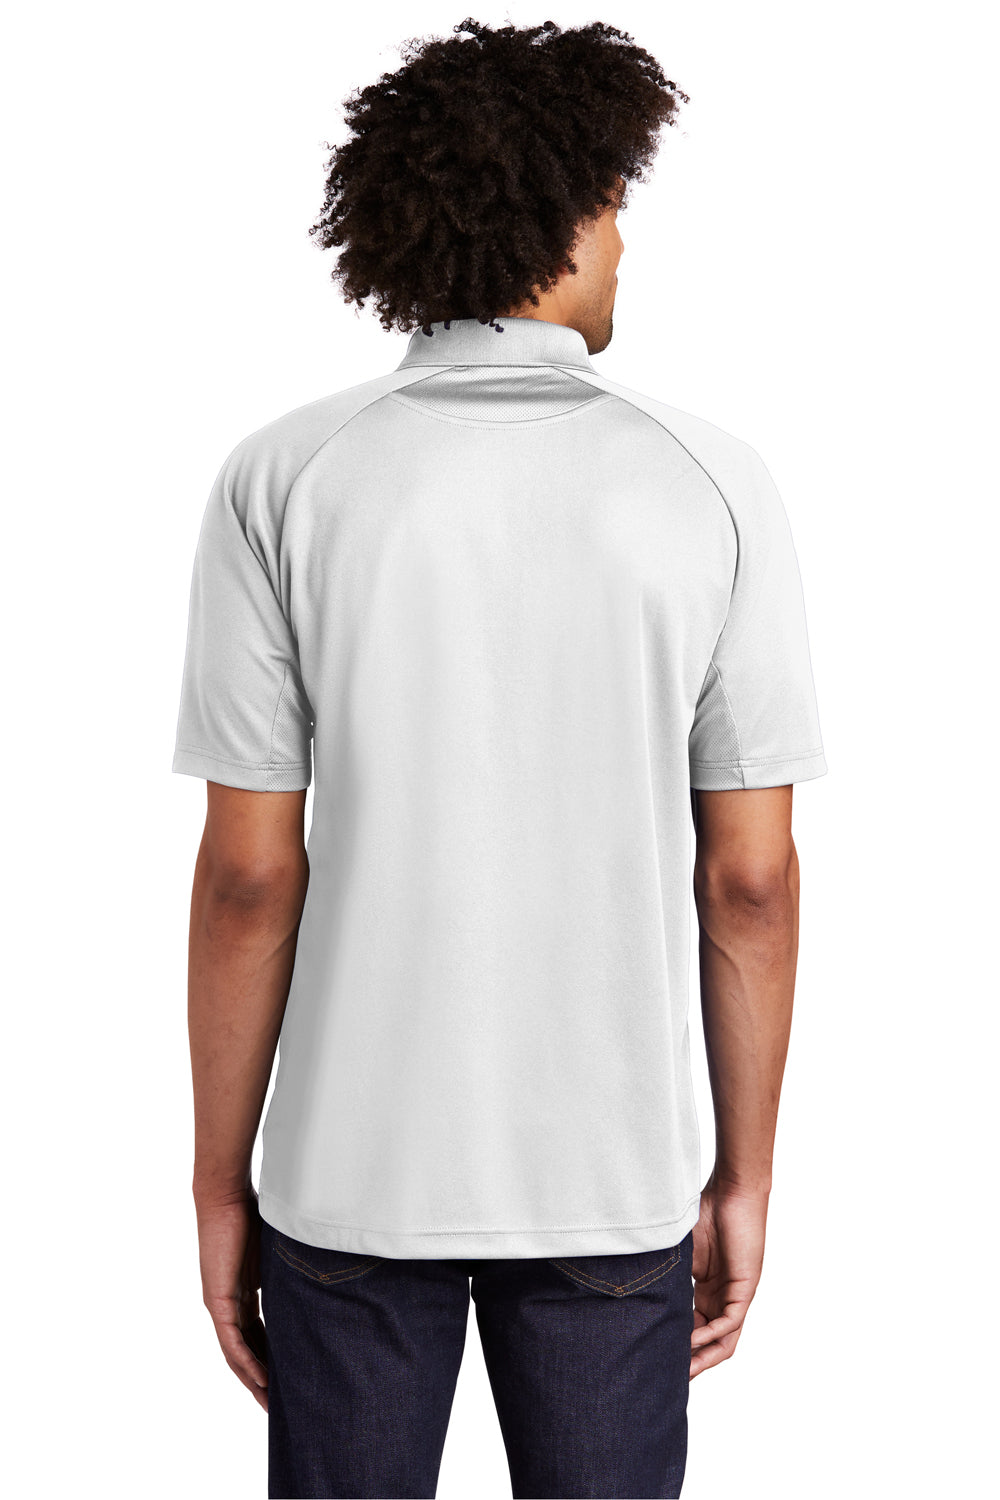 Sport-Tek T474 Mens Dri-Mesh Moisture Wicking Short Sleeve Polo Shirt White Back